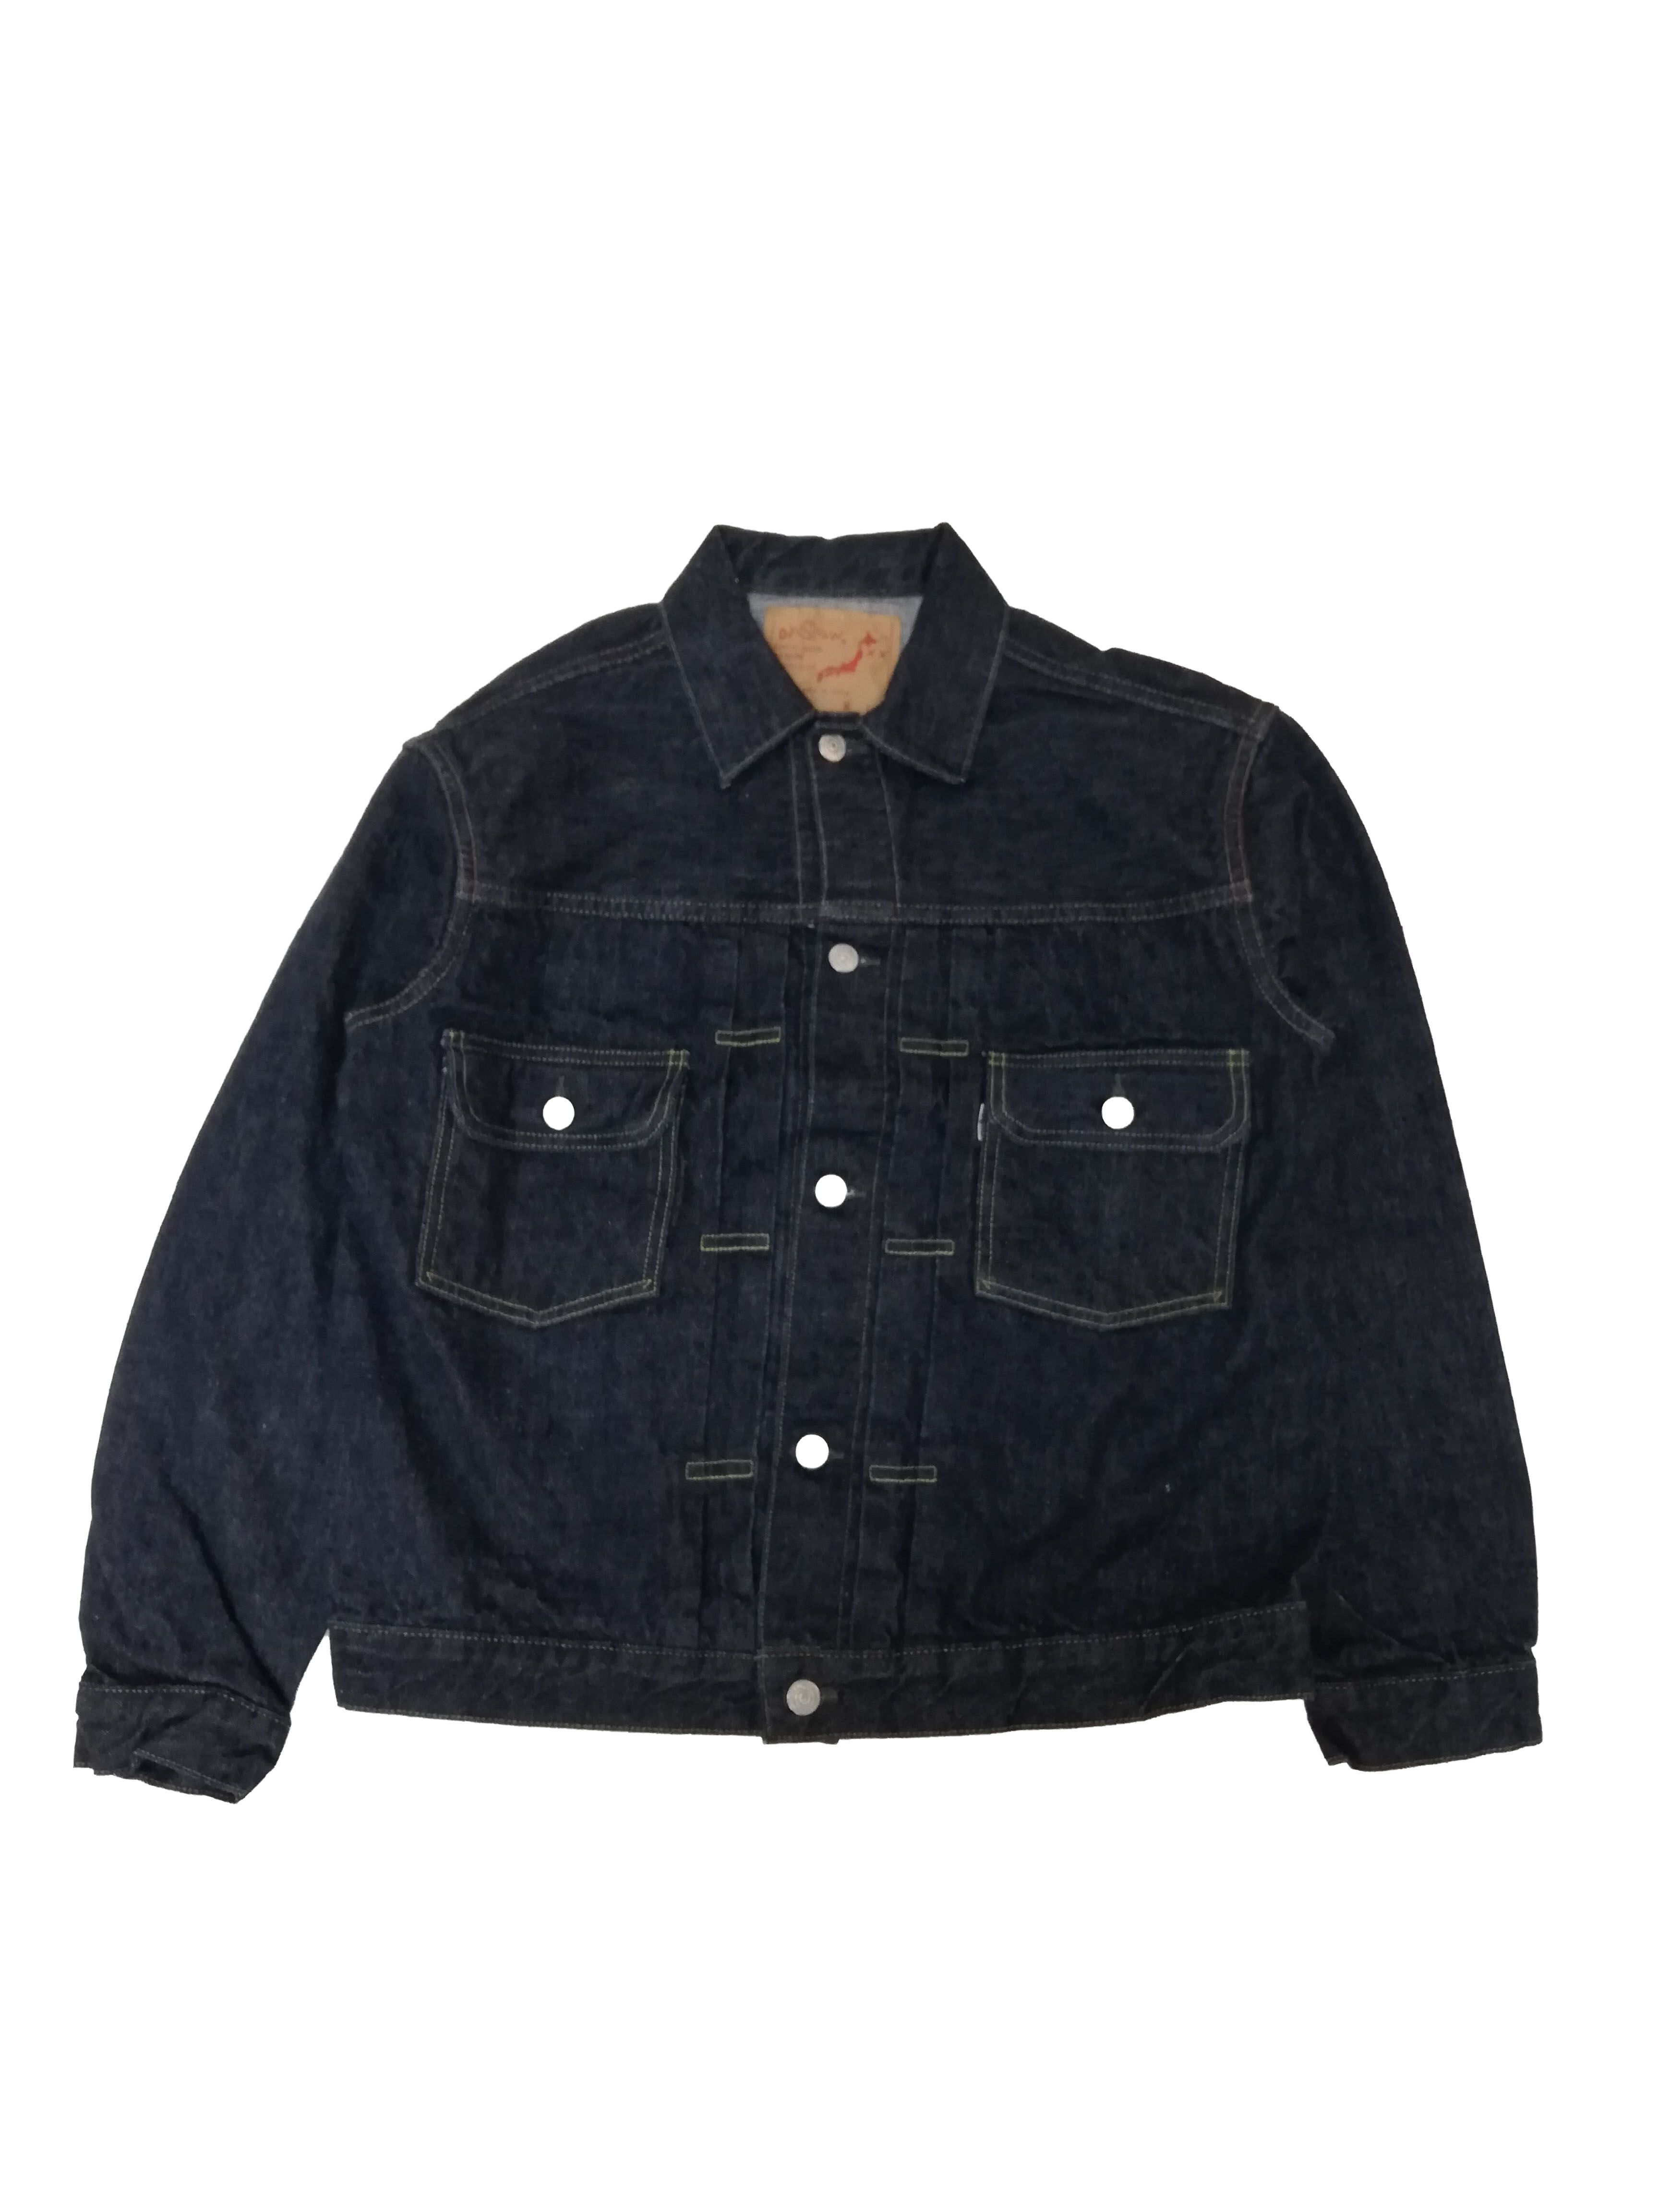 16002 2nd type 50's denim jacket-One washed-1